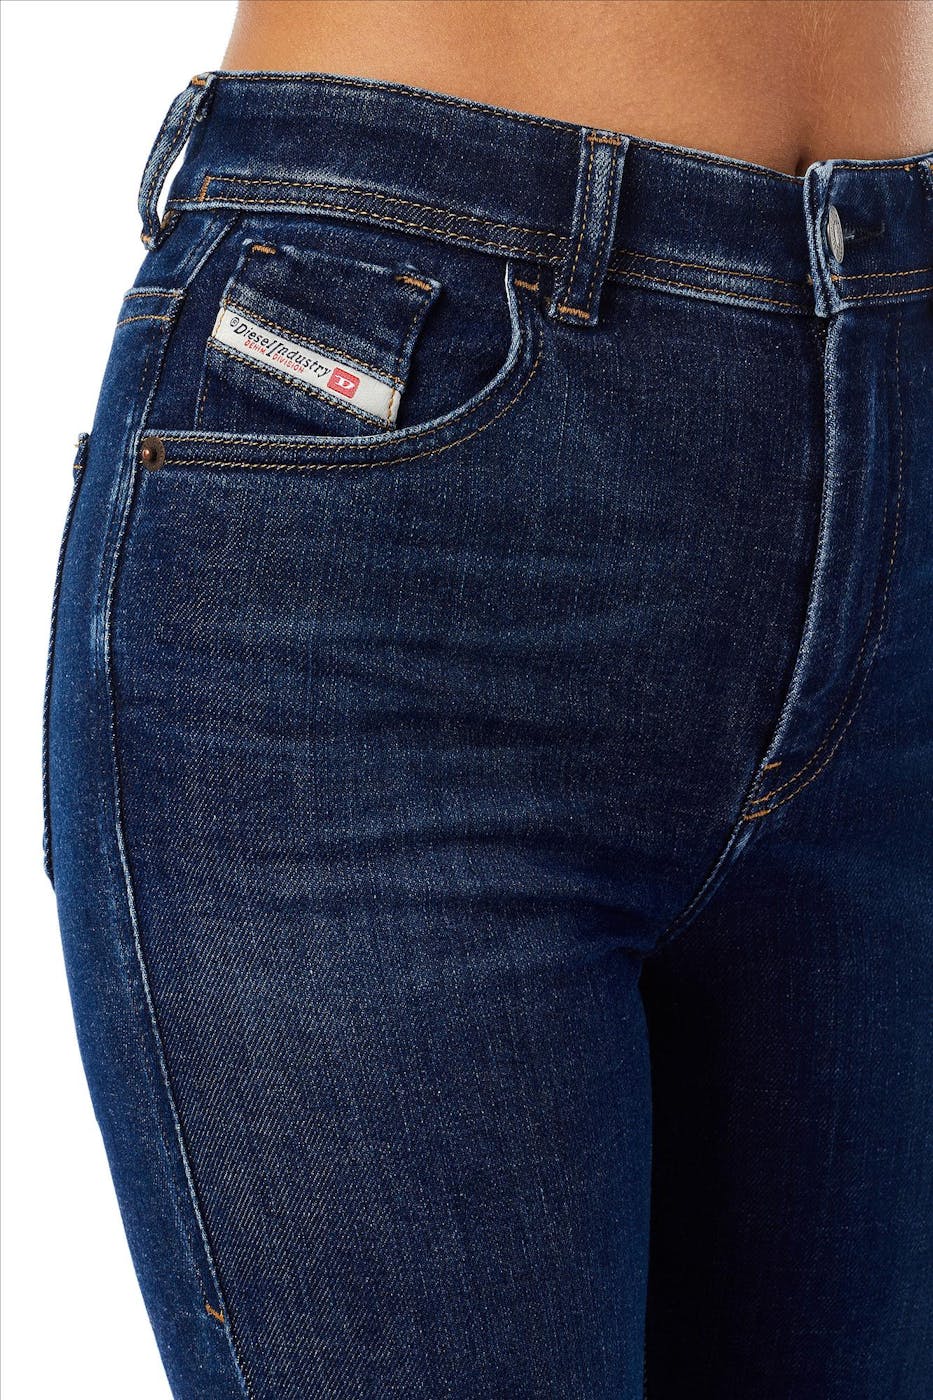 Diesel - Donkerblauwe Slandy skinny jeans